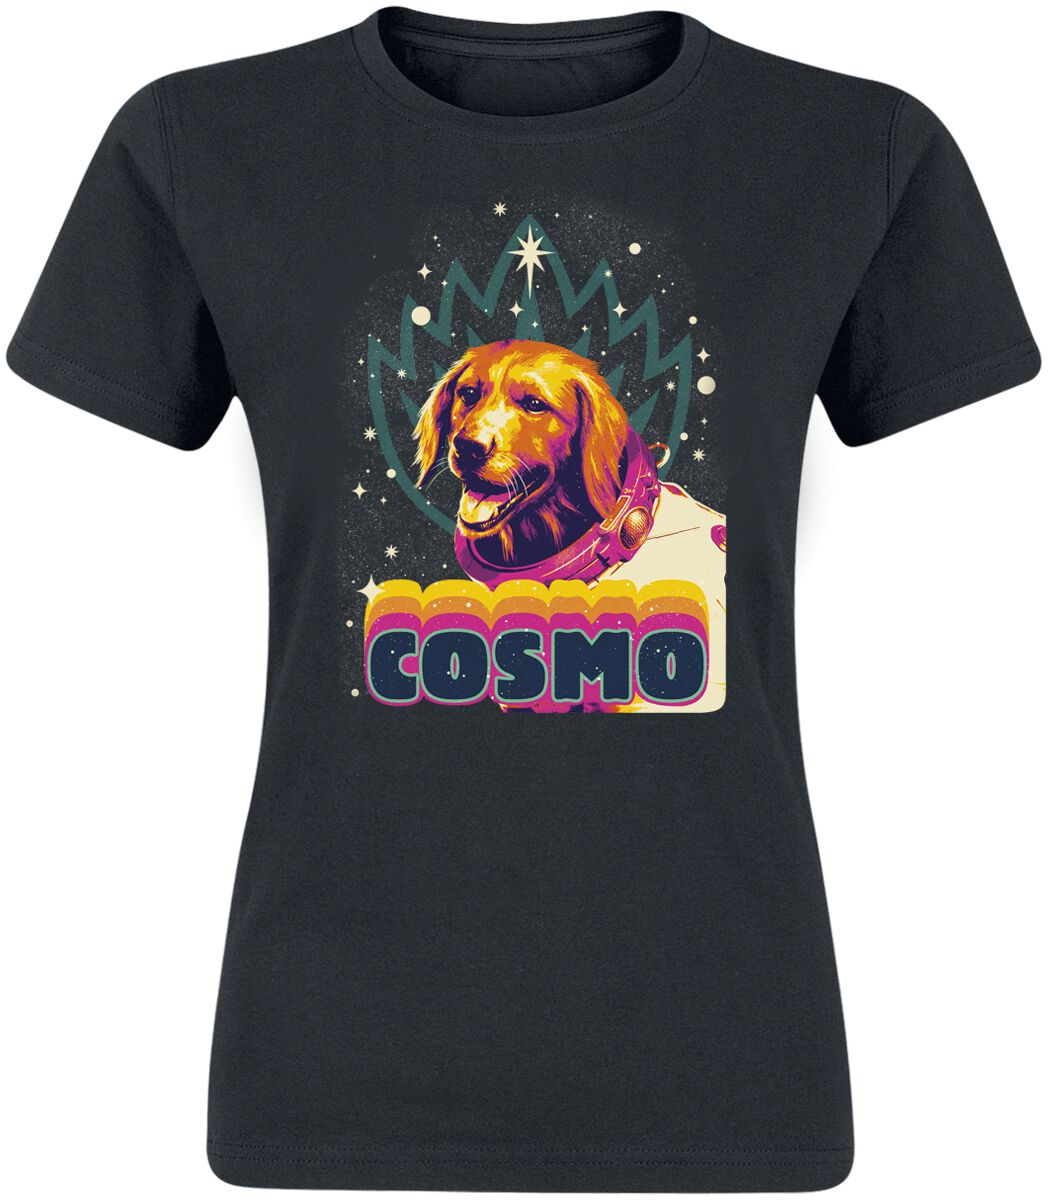 Guardians Of The Galaxy - Marvel T-Shirt - Vol. 3 - Cosmo - S bis L - für Damen - Größe S - schwarz  - EMP exklusives Merchandise!